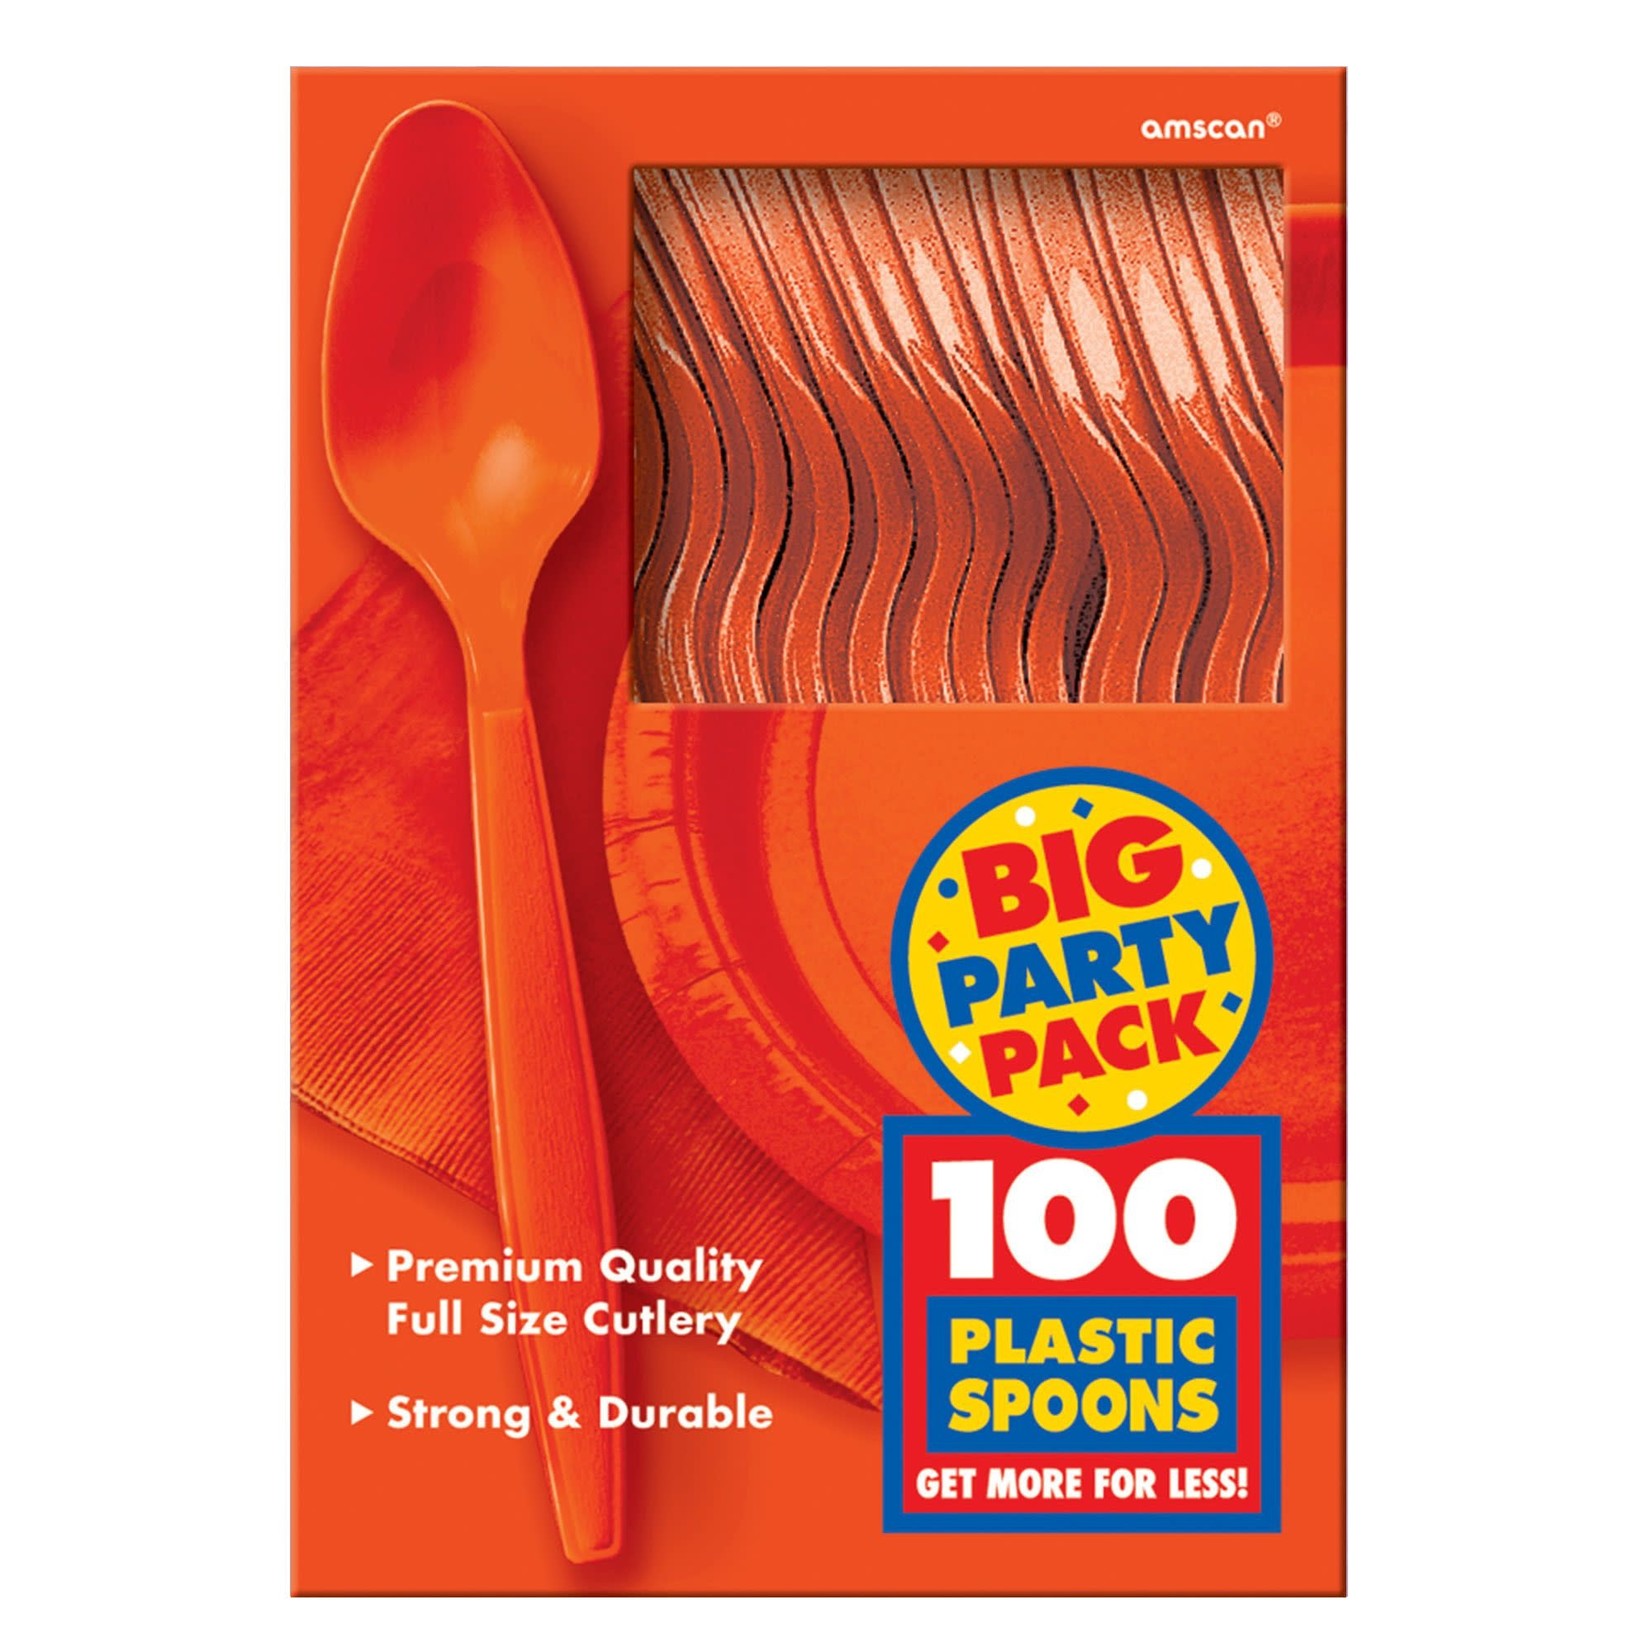 Big Party Pack Plastic Spoons - Orange Peel